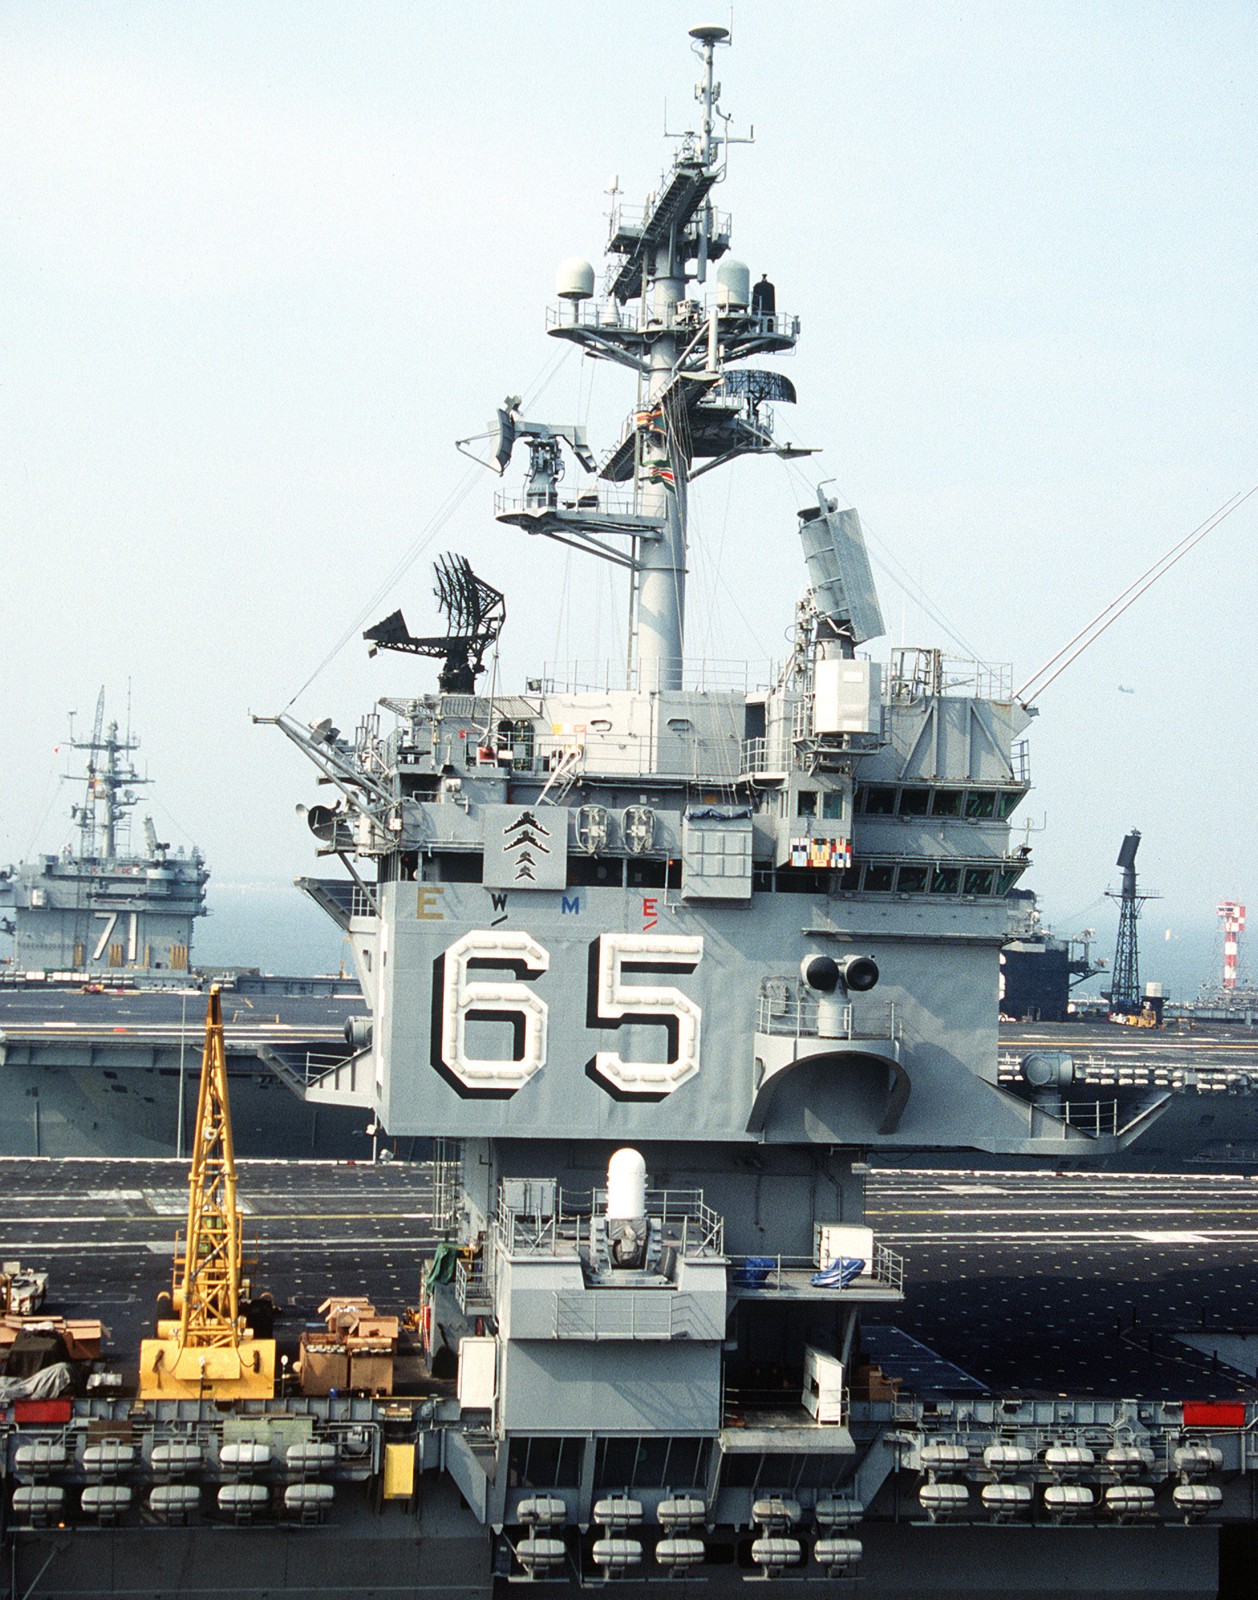 cvn-65 uss enterprise aircraft carrier us navy norfolk 1990 99